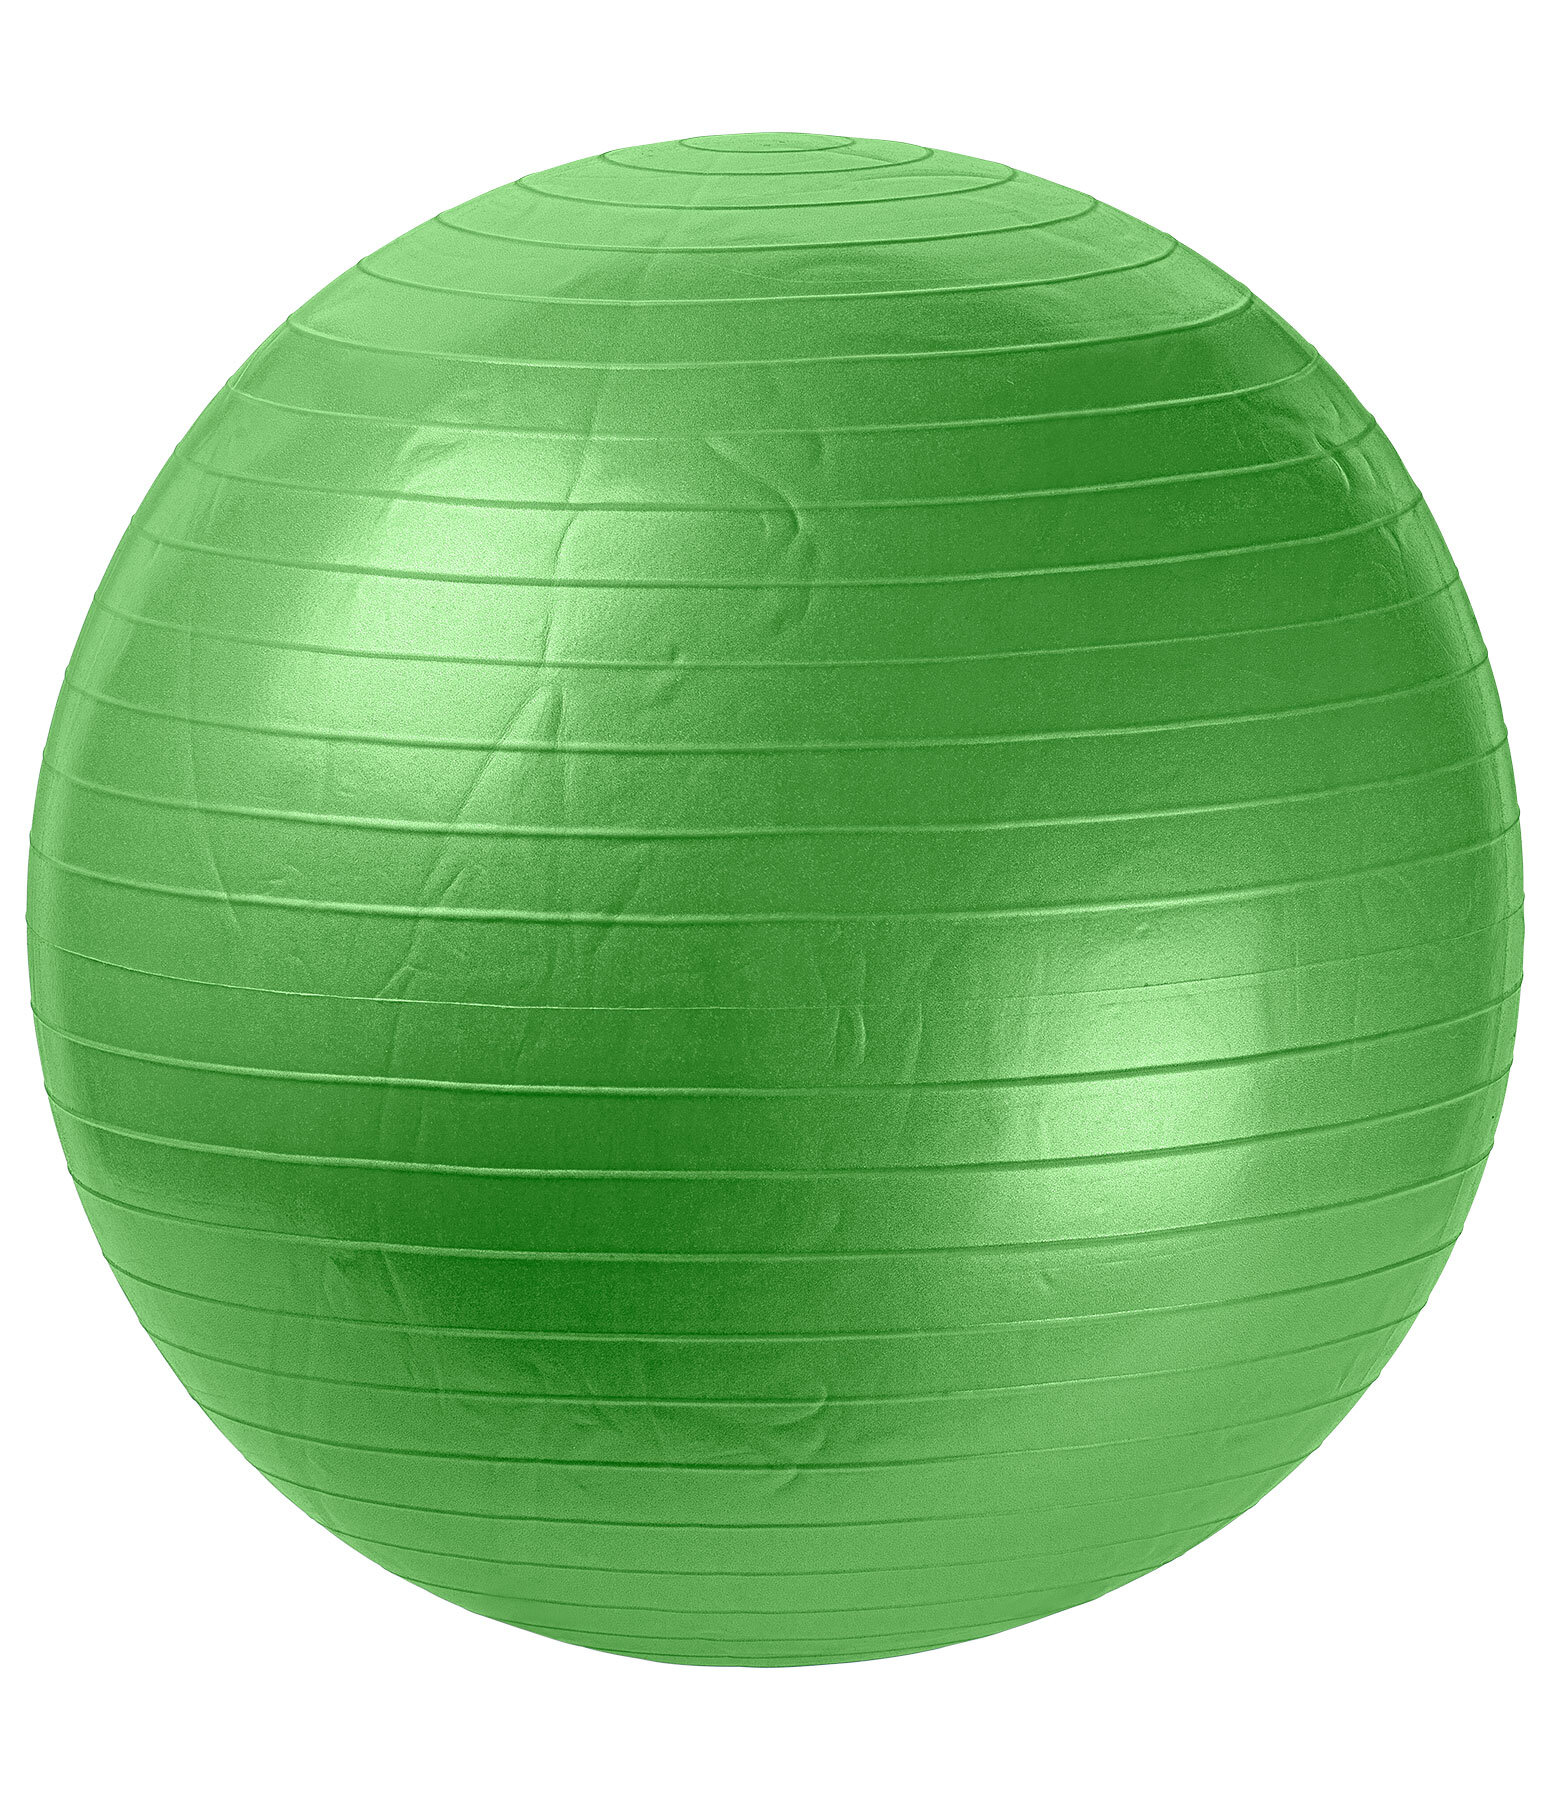 Aiguille de gonflage pour ballon de horseball - JOUETS POUR CHEVAUX - PADD